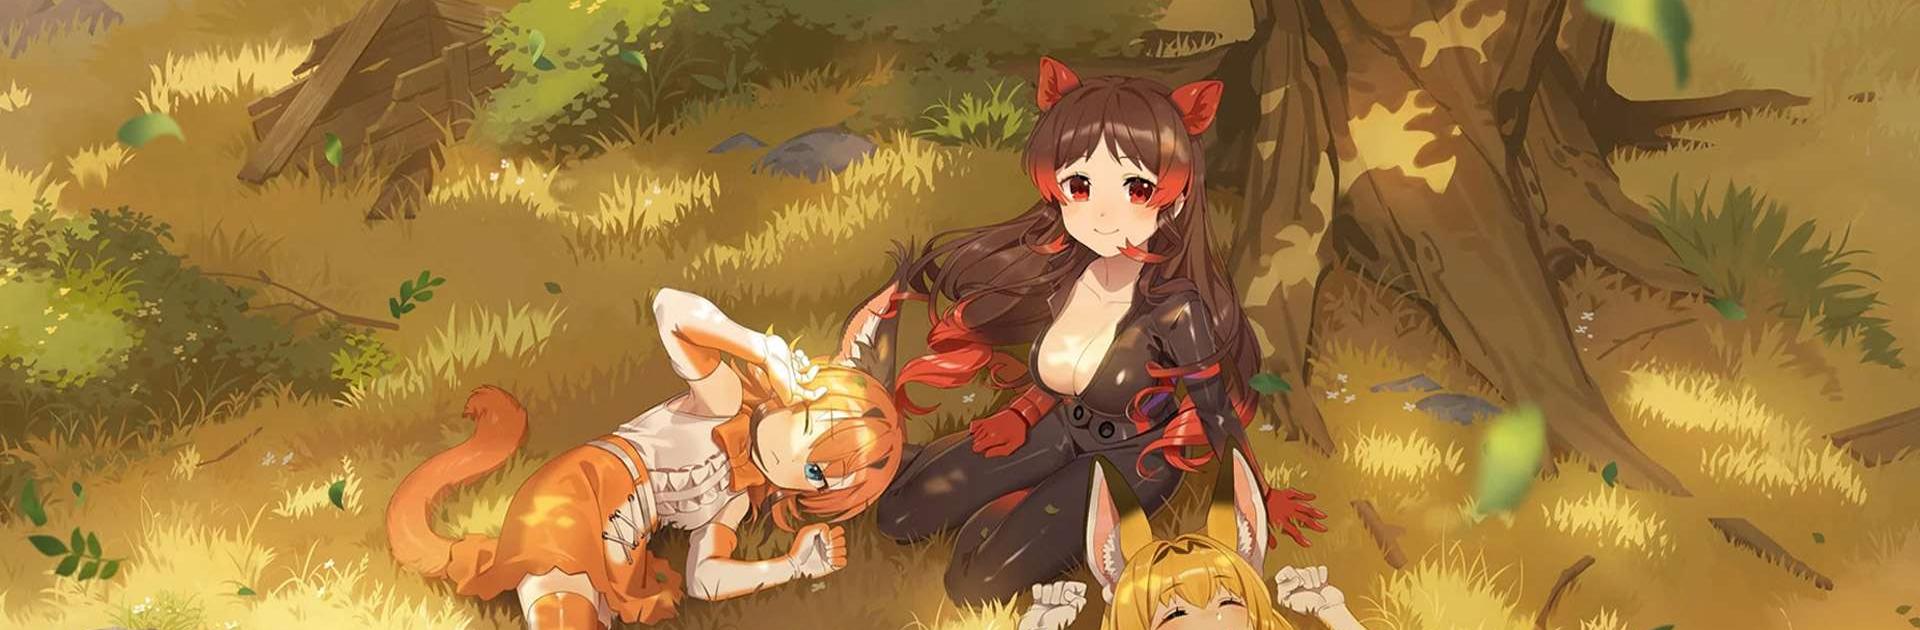 Animes Fox - Apps on Google Play